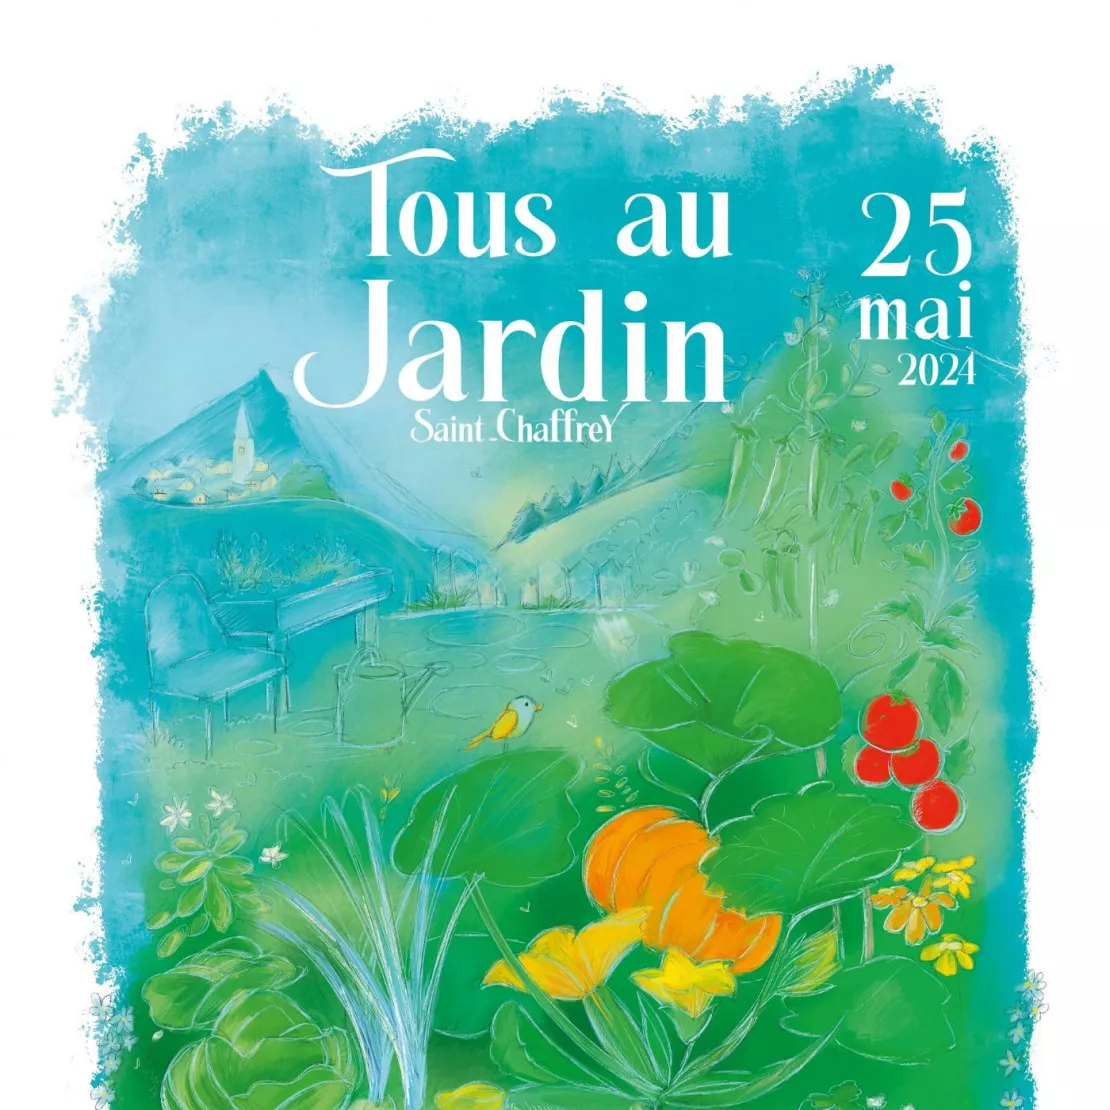 Alpes 1 & Vous : Tous au Jardin le 25 mai à Saint-Chaffrey